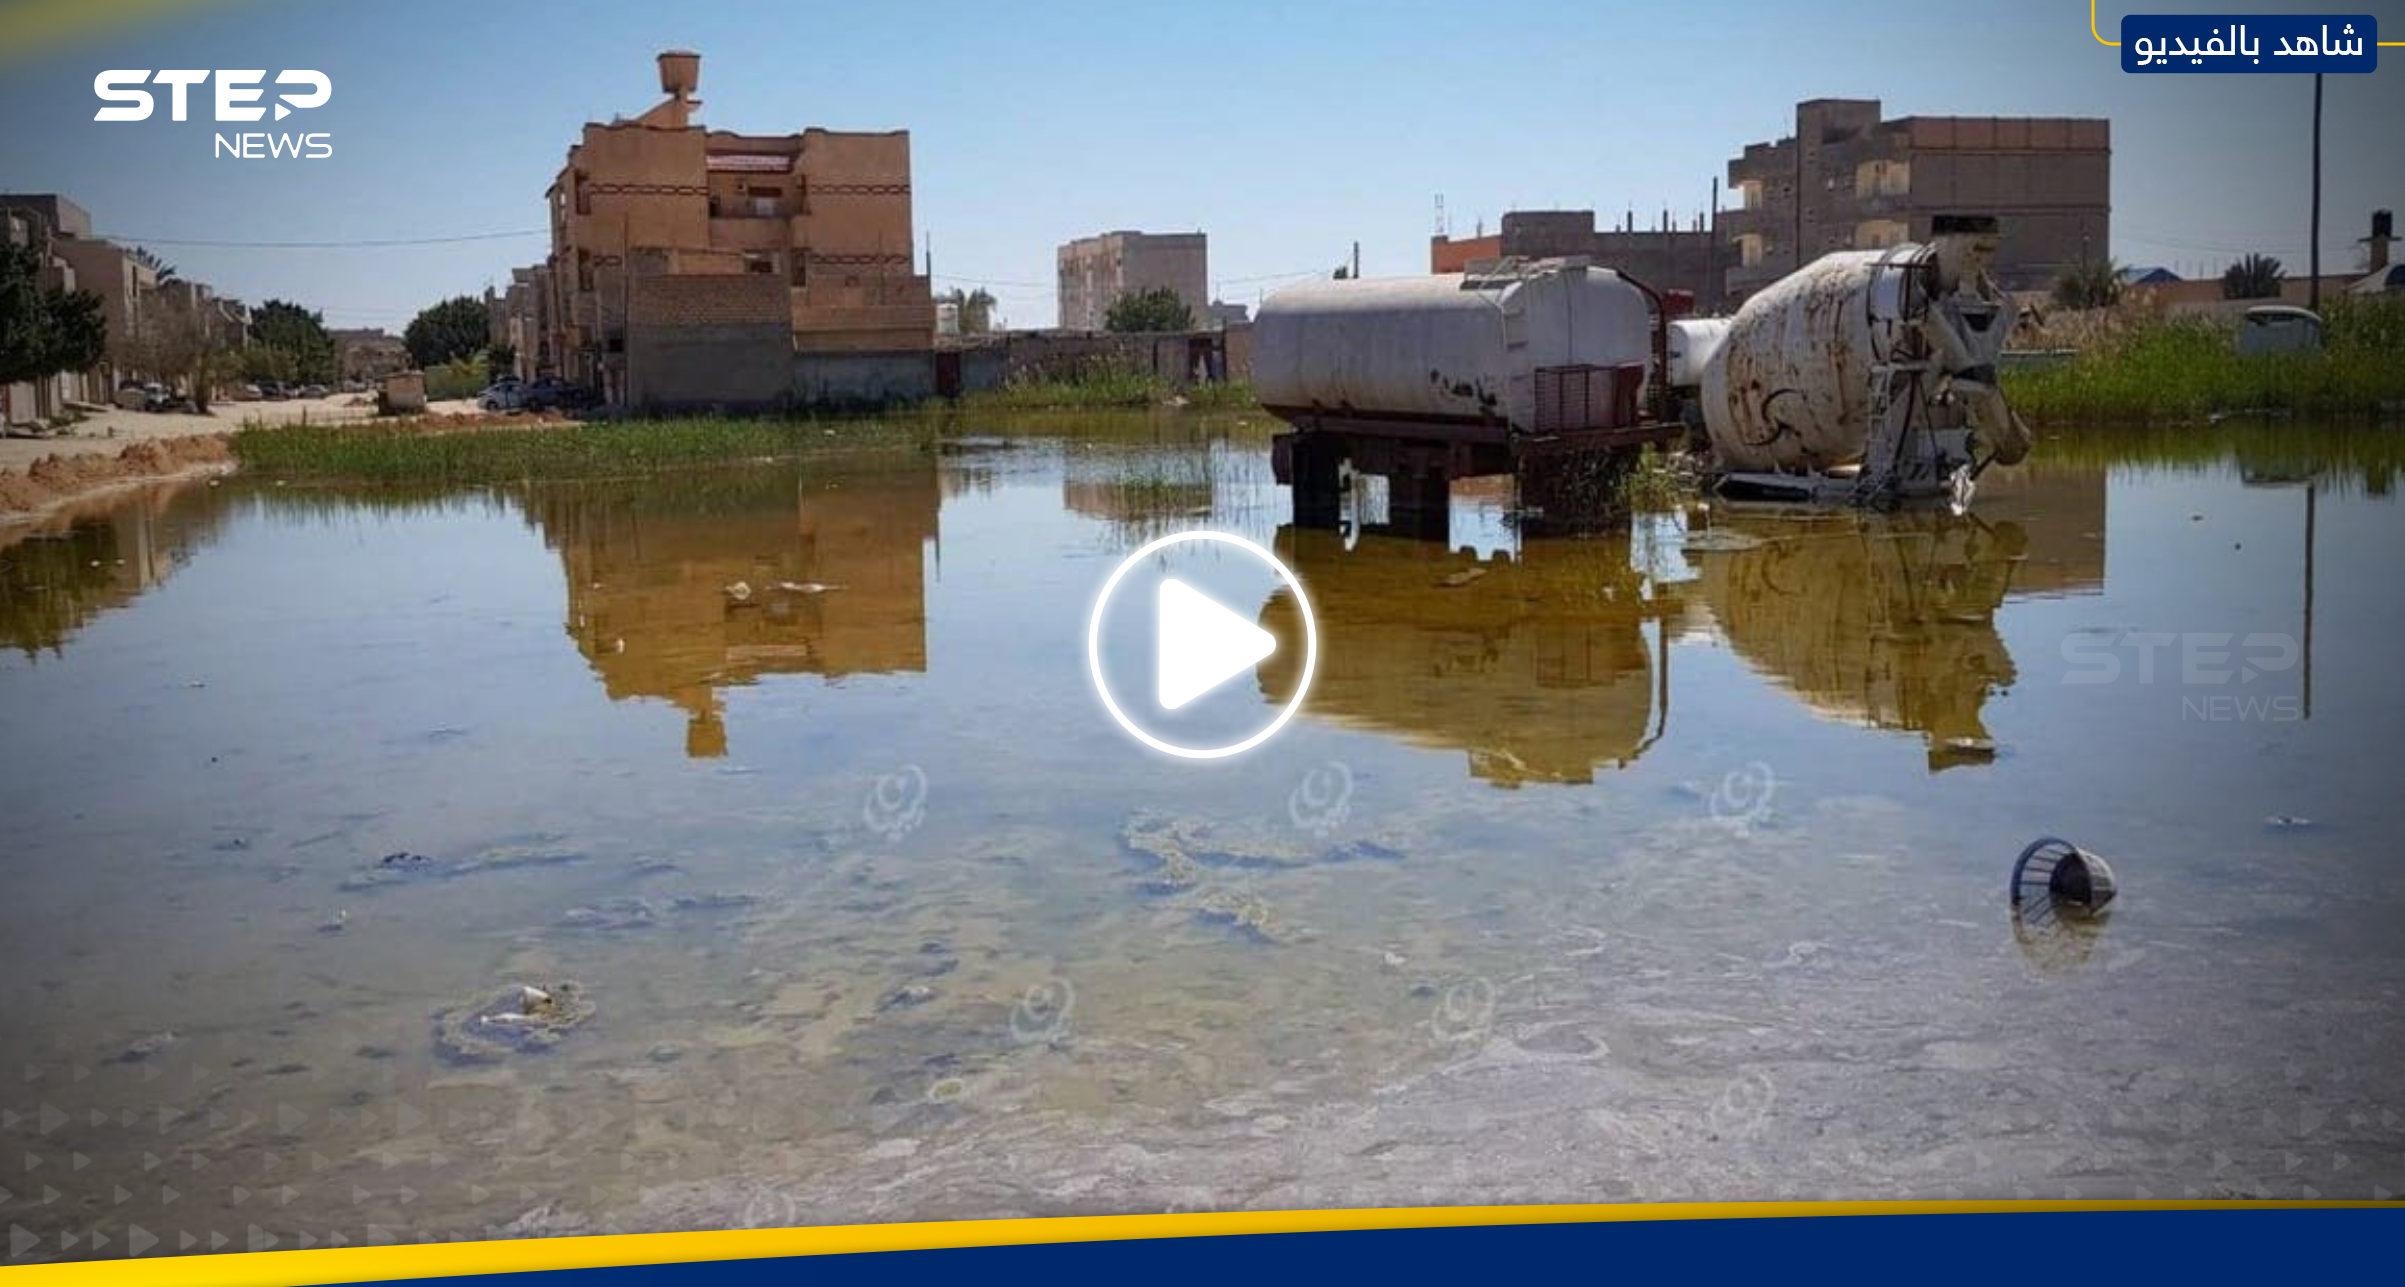 شاهد|| مياه حمراء "غامضة" تغمر مدينة زليتن الليبية وتحذيرات من "كارثة"